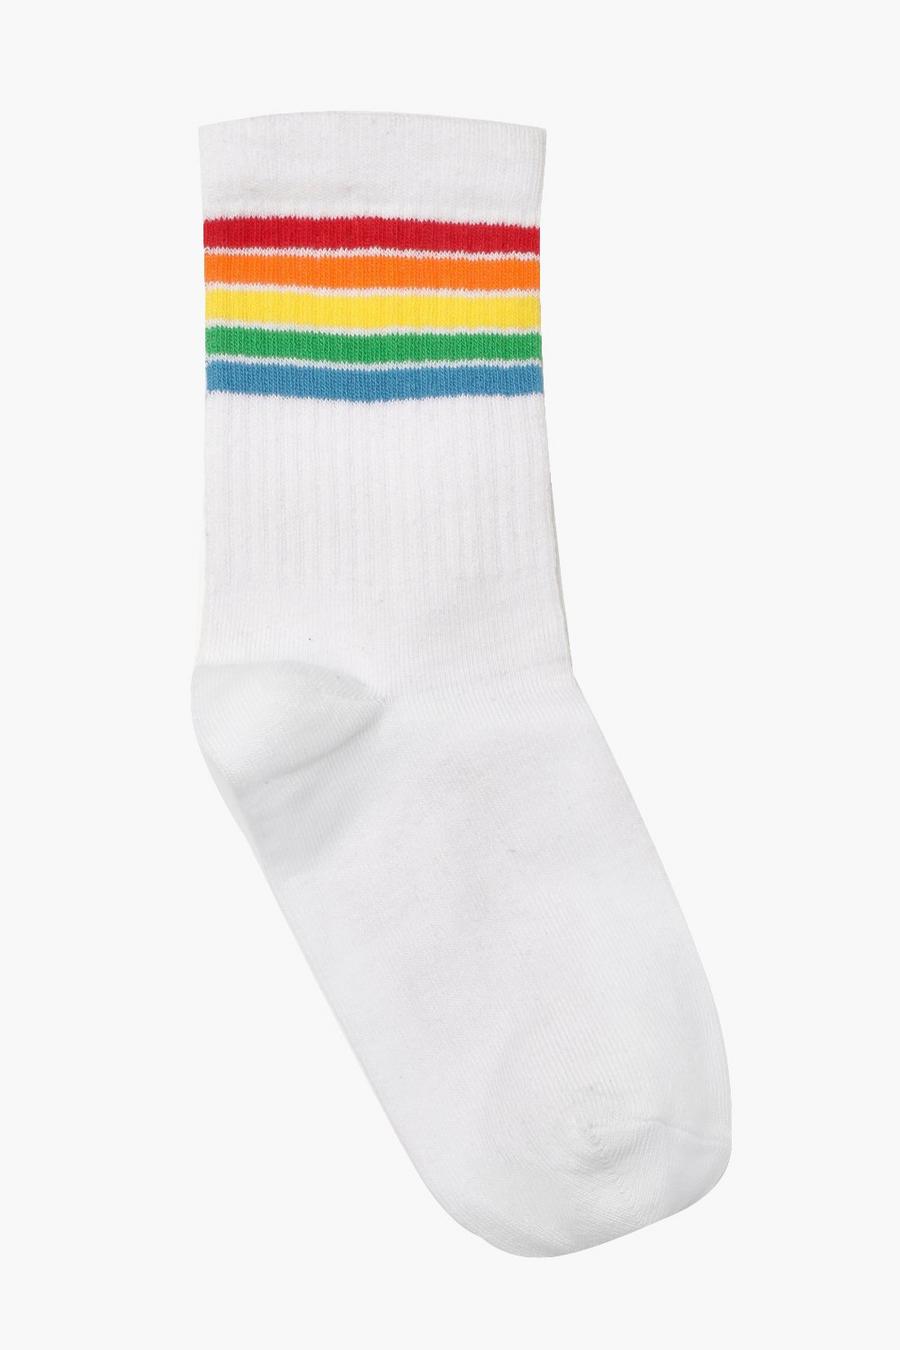 Gerippte gestreifte Sport-Socken mit Regenbogen, Weiß white